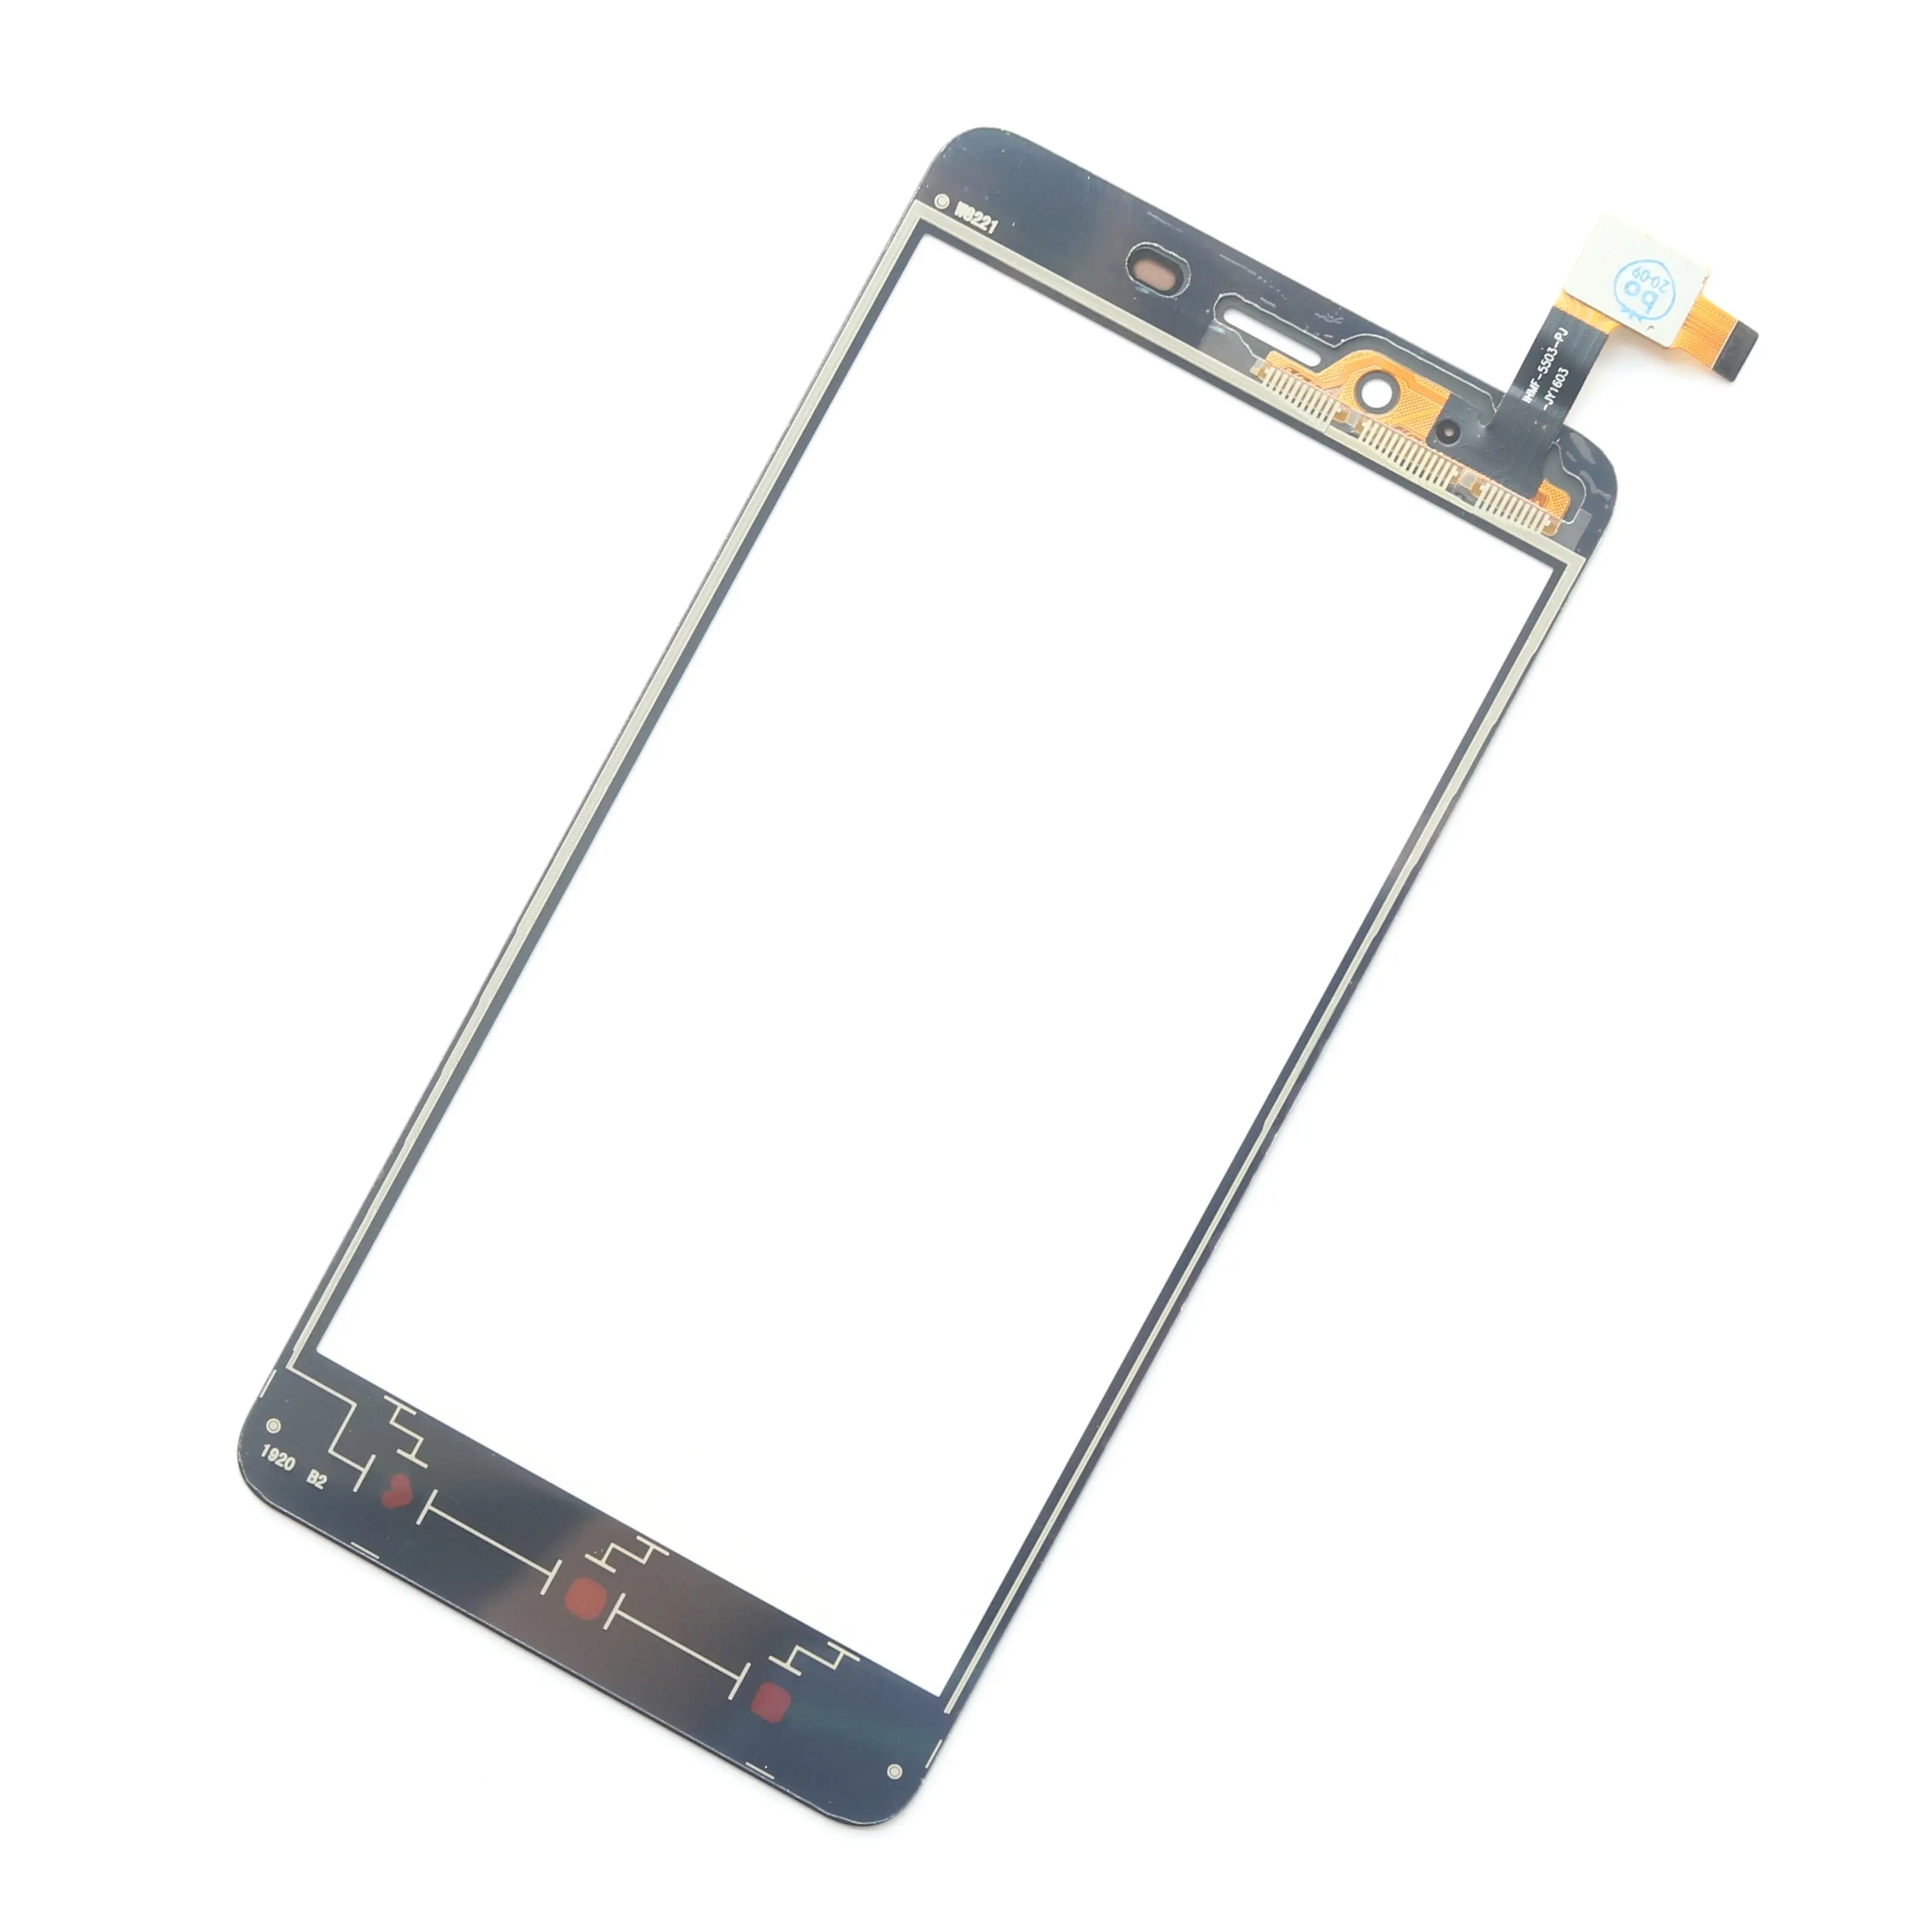 G + OCA Pro 100% calidad original TP panel de vidrio frontal pantalla táctil digital adecuado para la reparación de teléfonos móviles Huawei